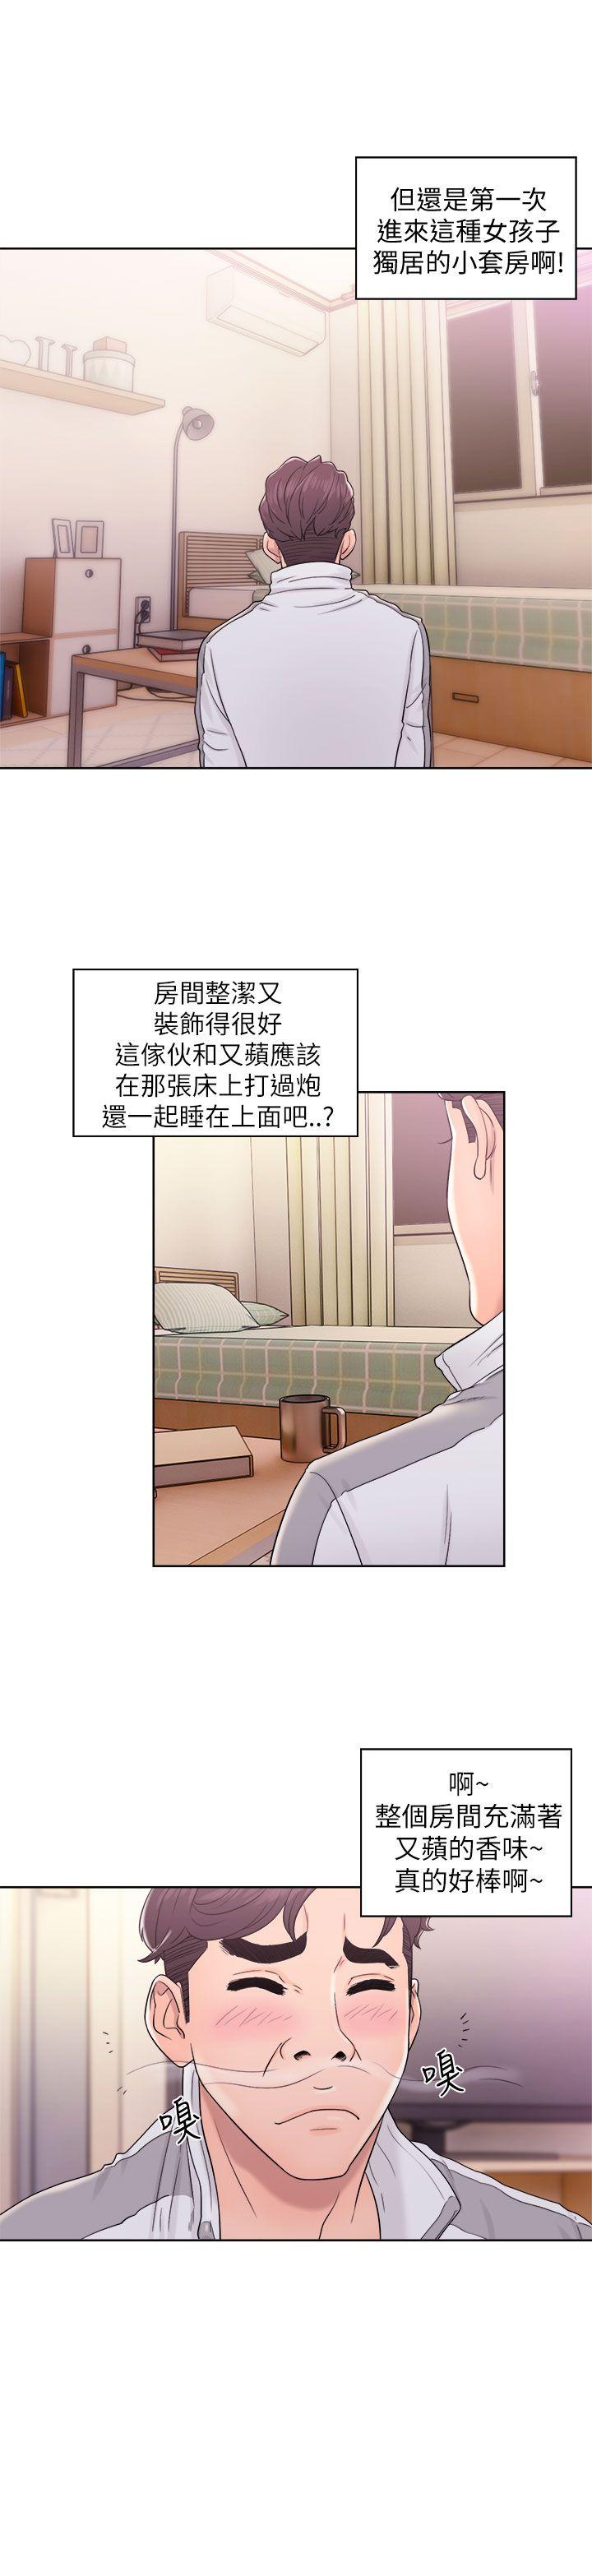 韩国污漫画 青春:逆齡小鮮肉 第11话 13